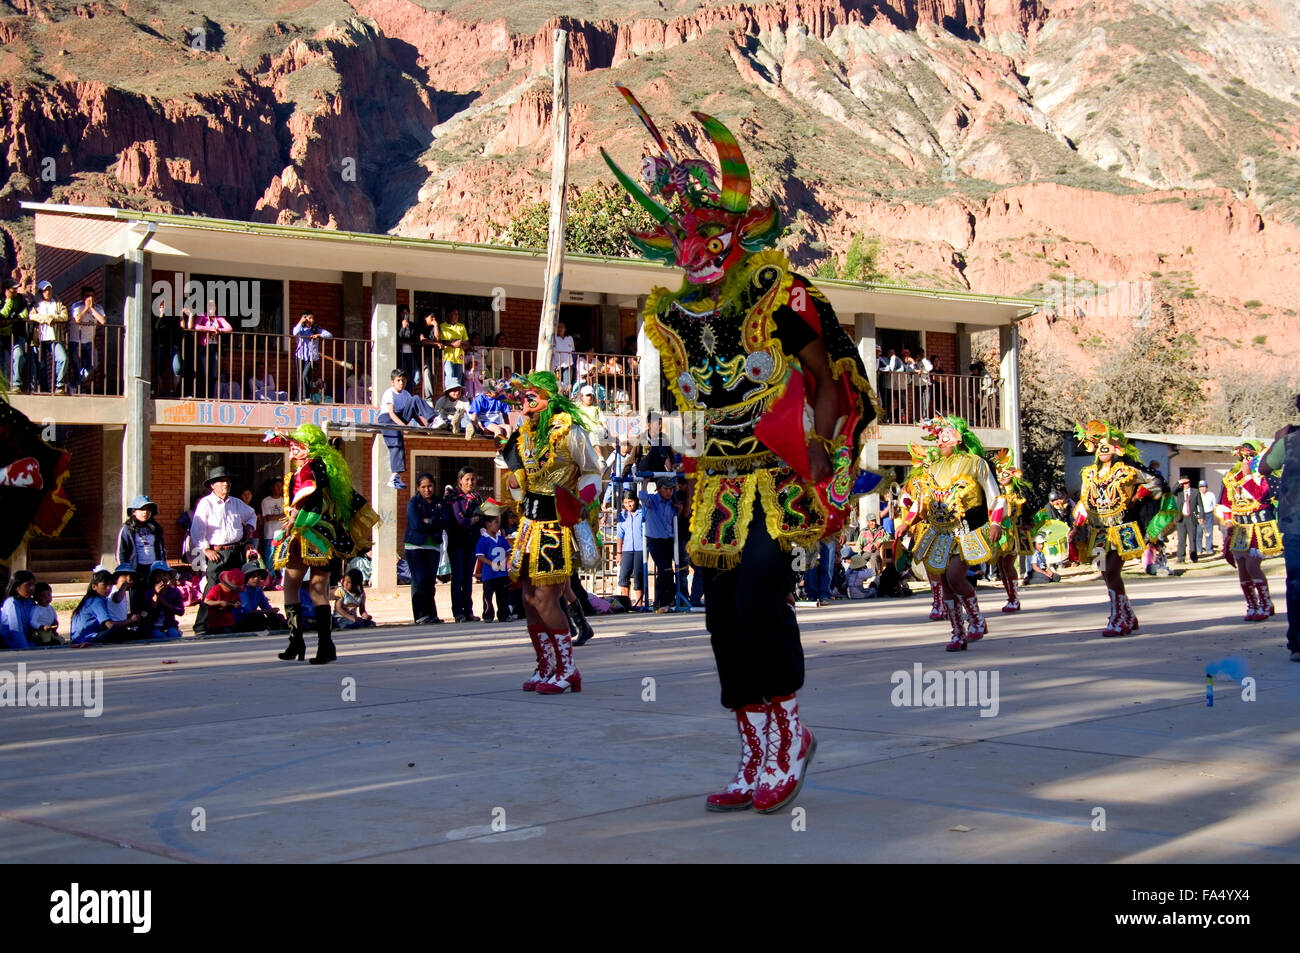 Tänzerinnen in traditionellen Kostümen und Masken, Zuschauer, Musiker in einer Parade auf der 500-Jahr-Feier des Luribay, Bolivien Stockfoto